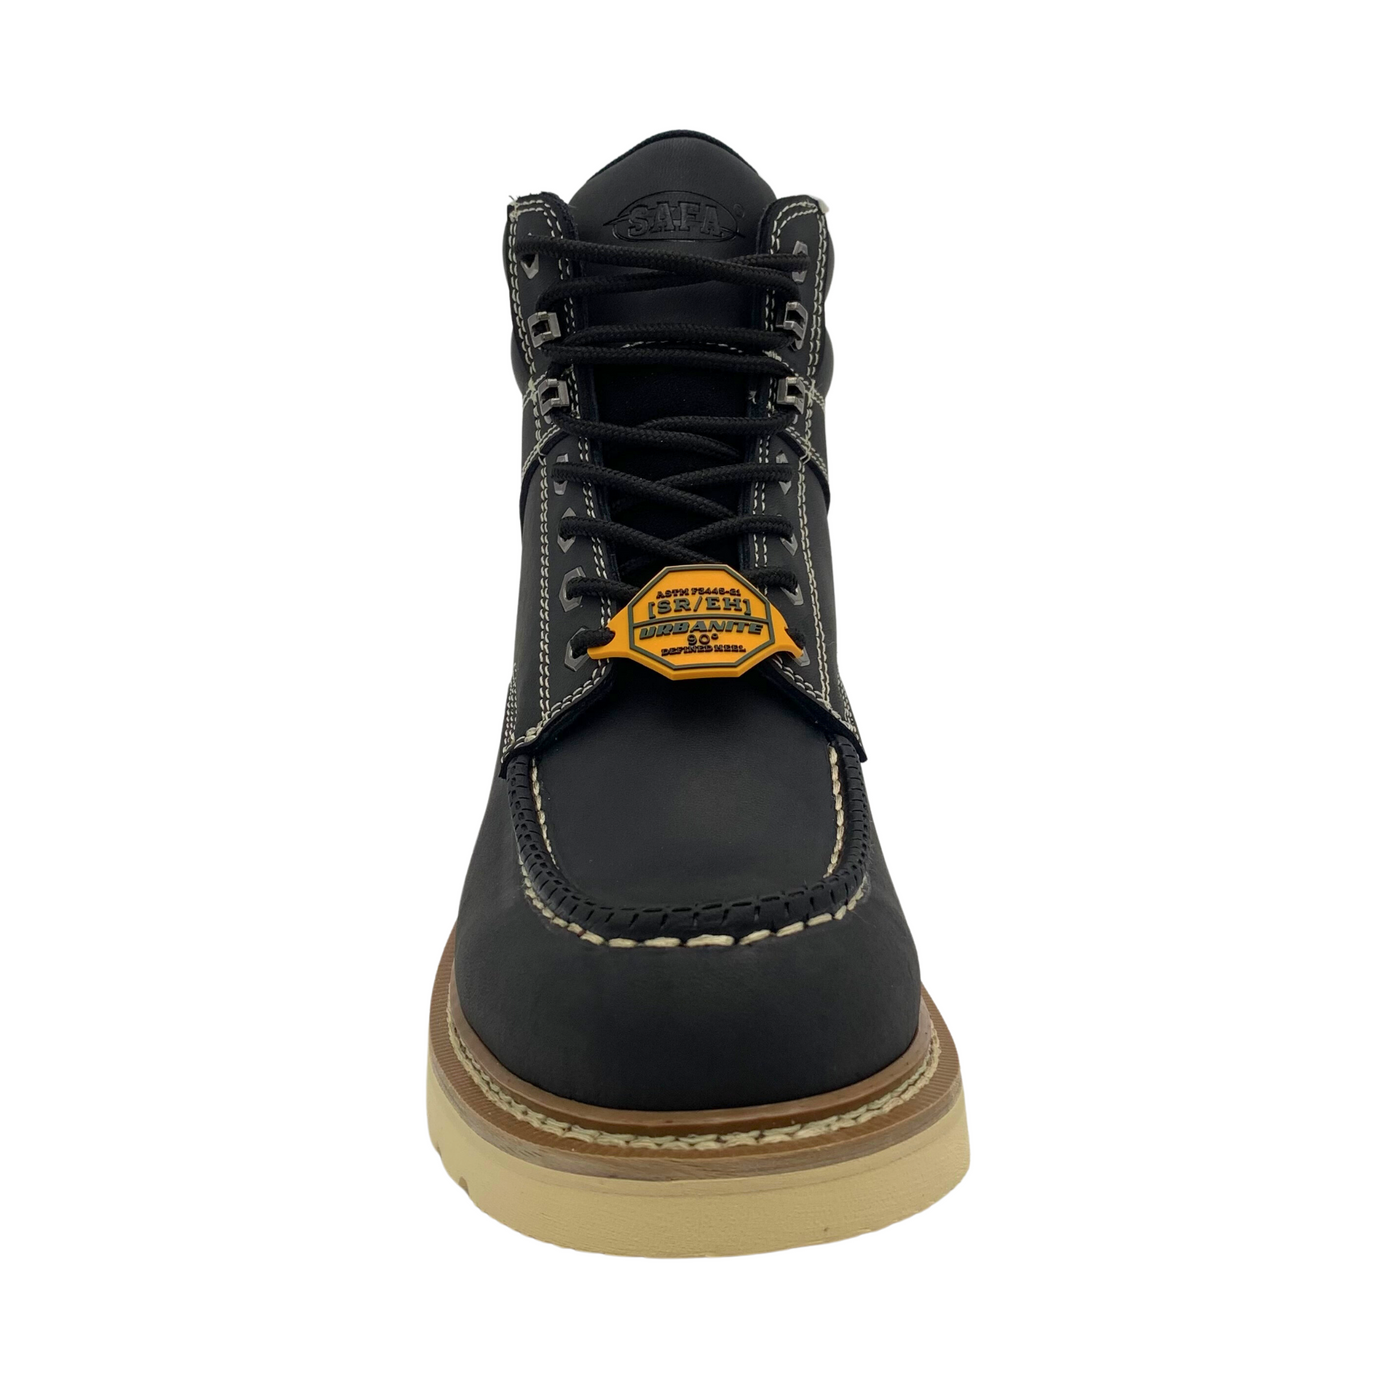 Men's 6" Black Leather Defined Heel Cap Toe Work Boot